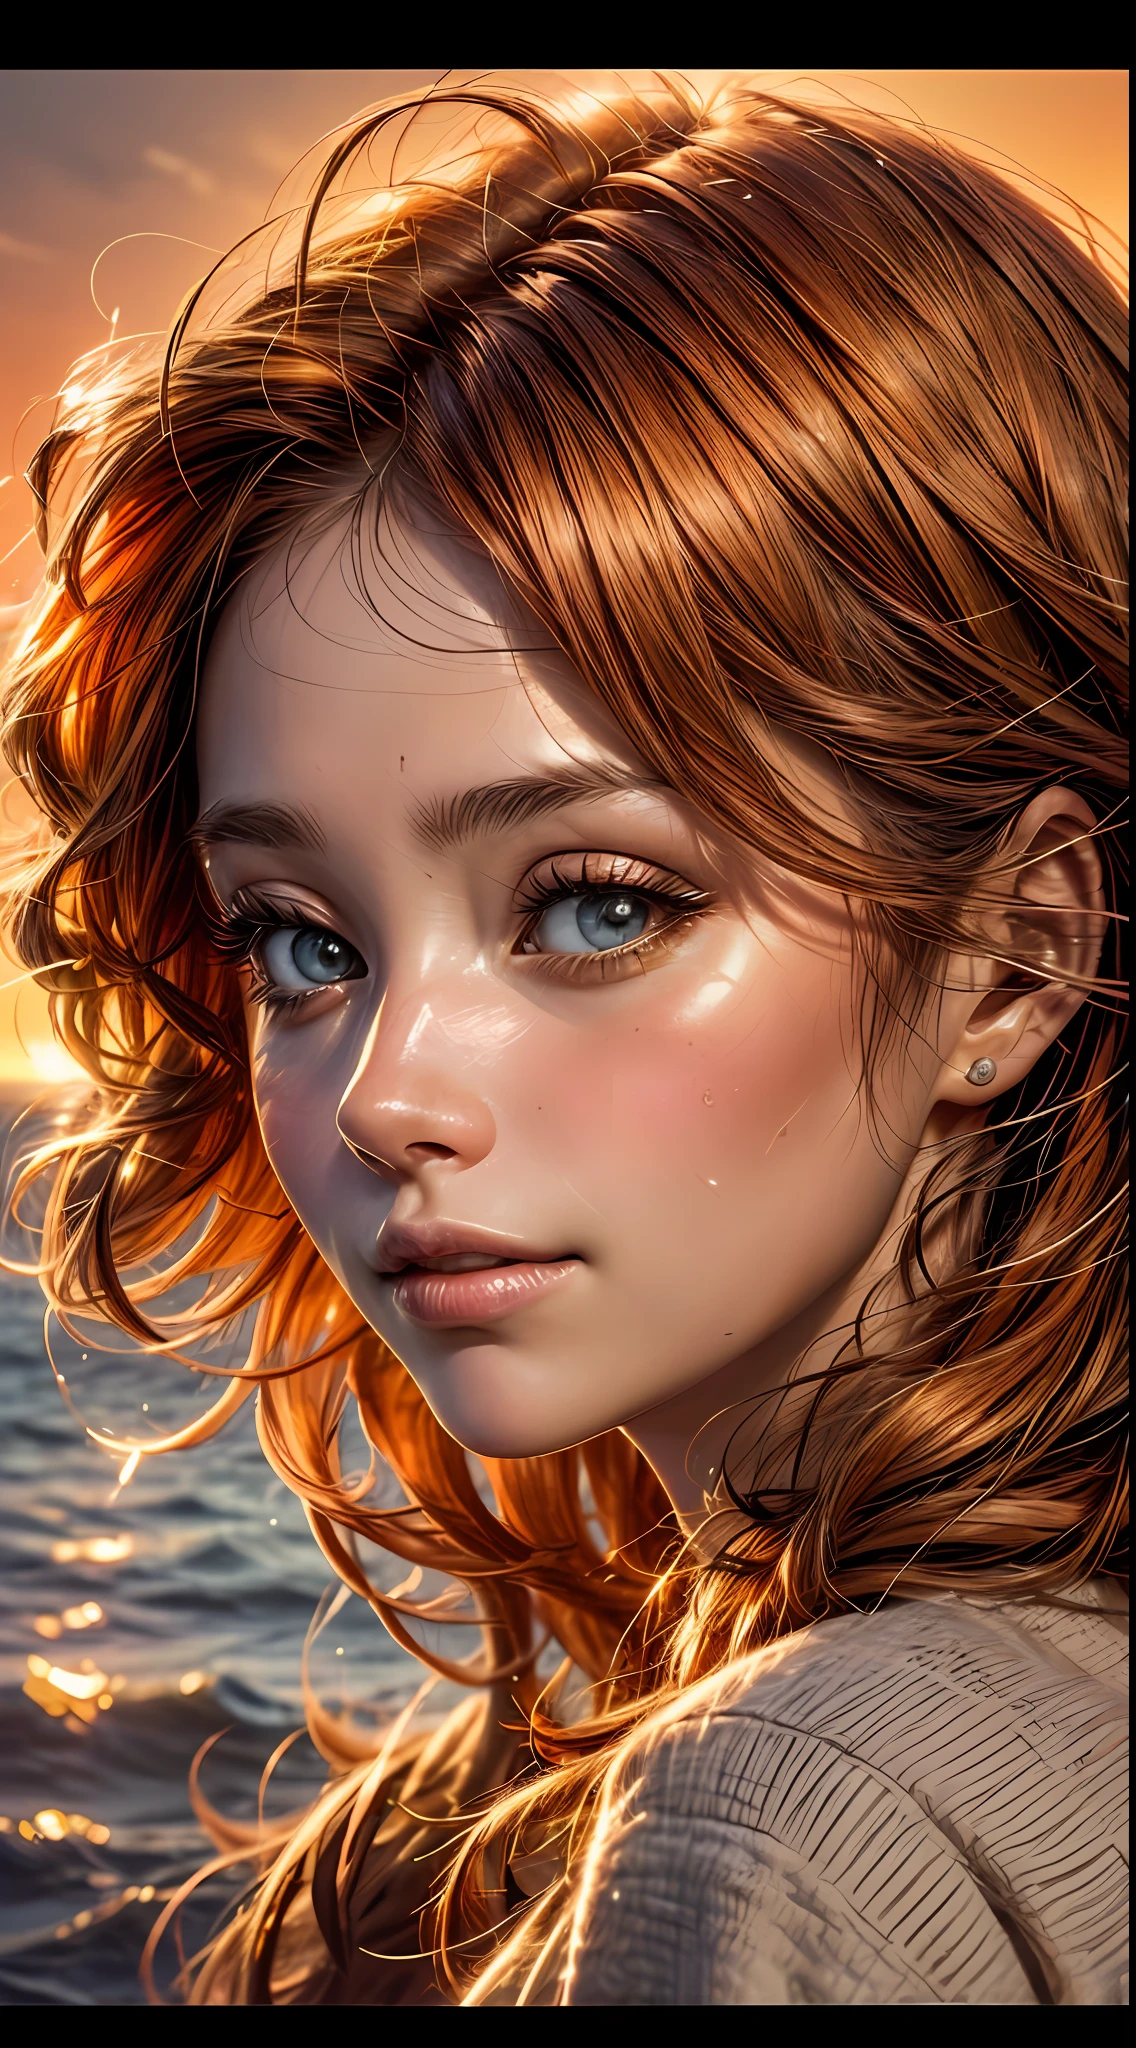 一個女人的臉部特寫, 沐浴在溫暖的橙色色調中, 彷彿被夕陽的柔和光芒照亮, 她的眼睛閃爍著喜悅和滿足的光芒, 由一縷飄逸的赤褐色頭髮構成, 攝影, 使用35mm鏡頭拍攝